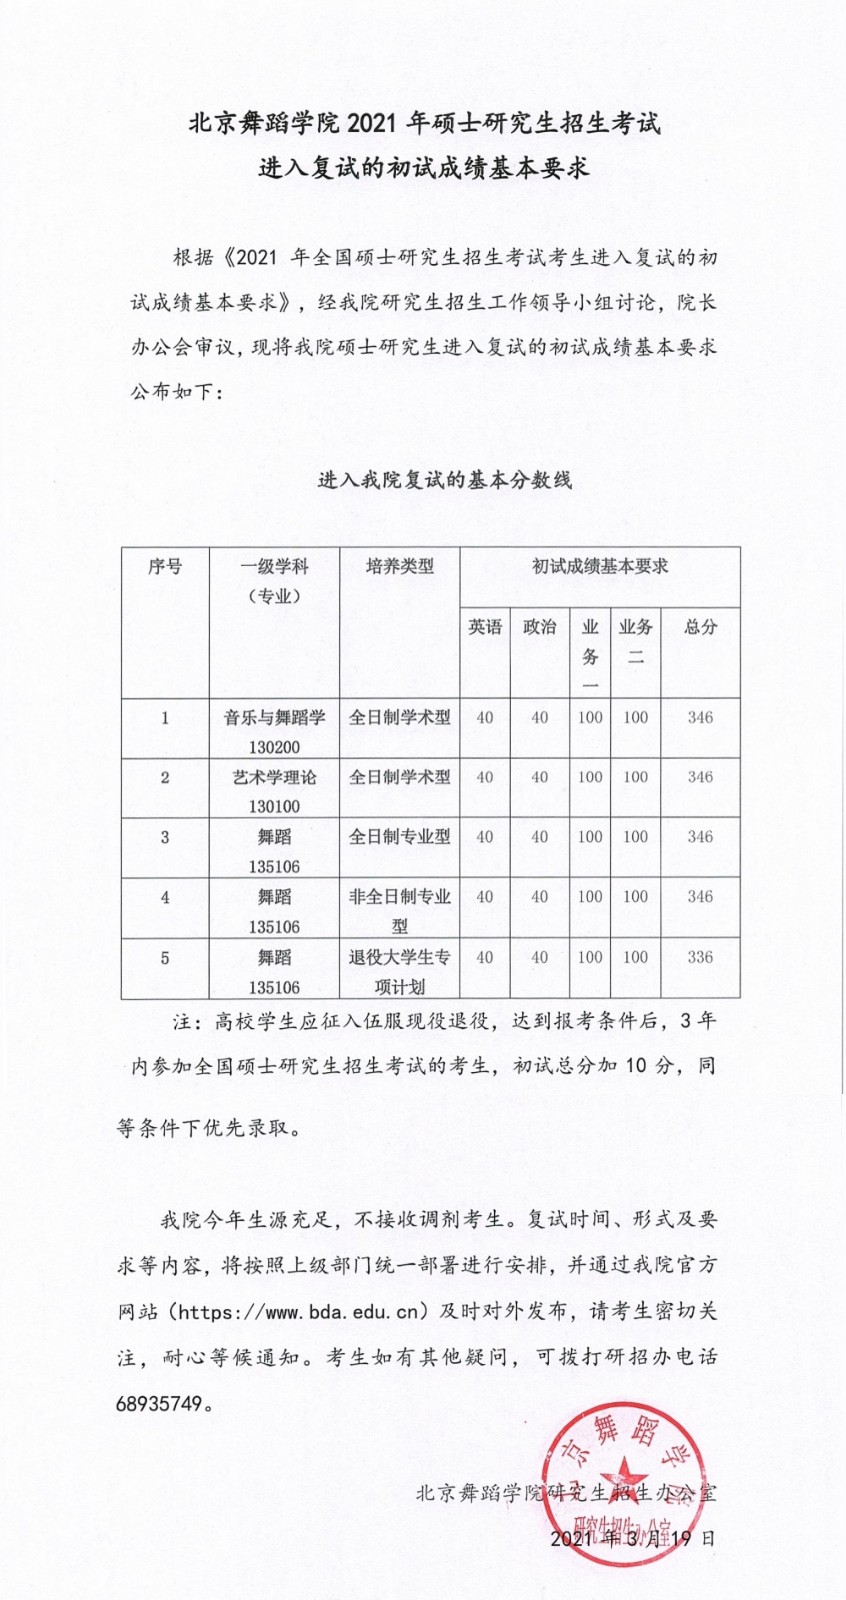 2021年北京舞蹈学院硕士研究生招生考试进入复试的初试成绩基本要求